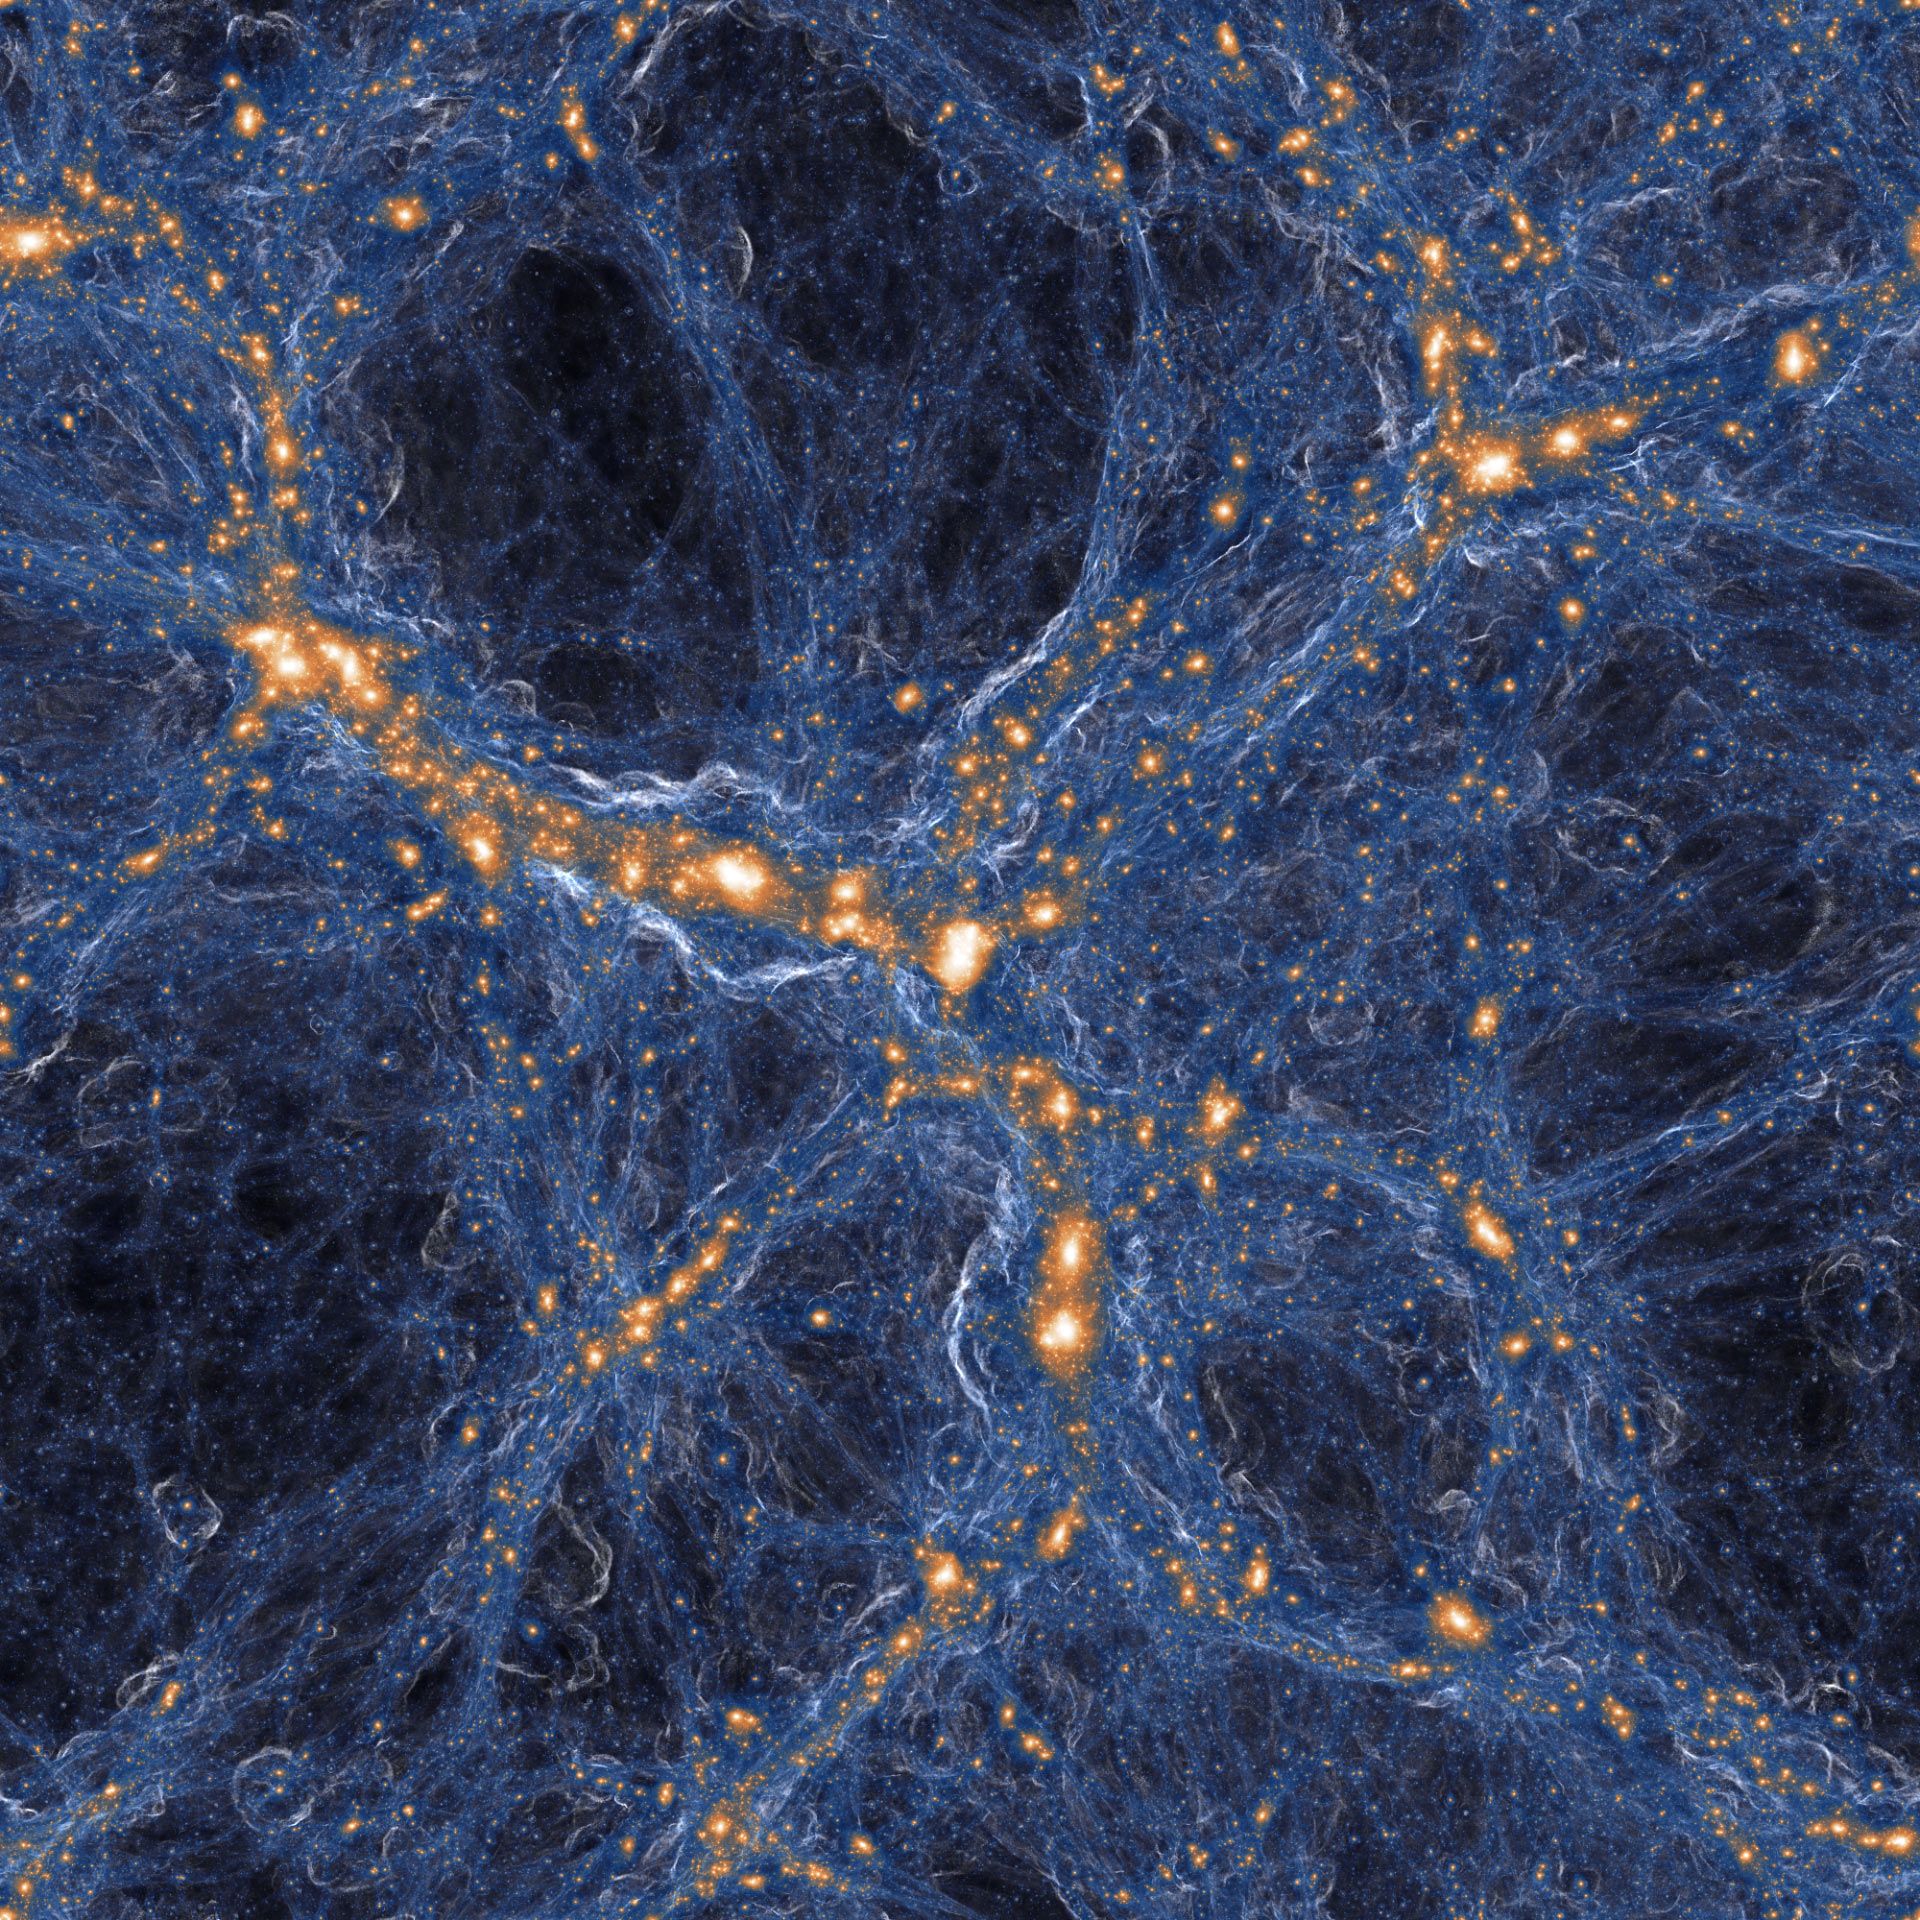 Simulación de galaxias y gases en el universo. Crédito: TNG colaboración.